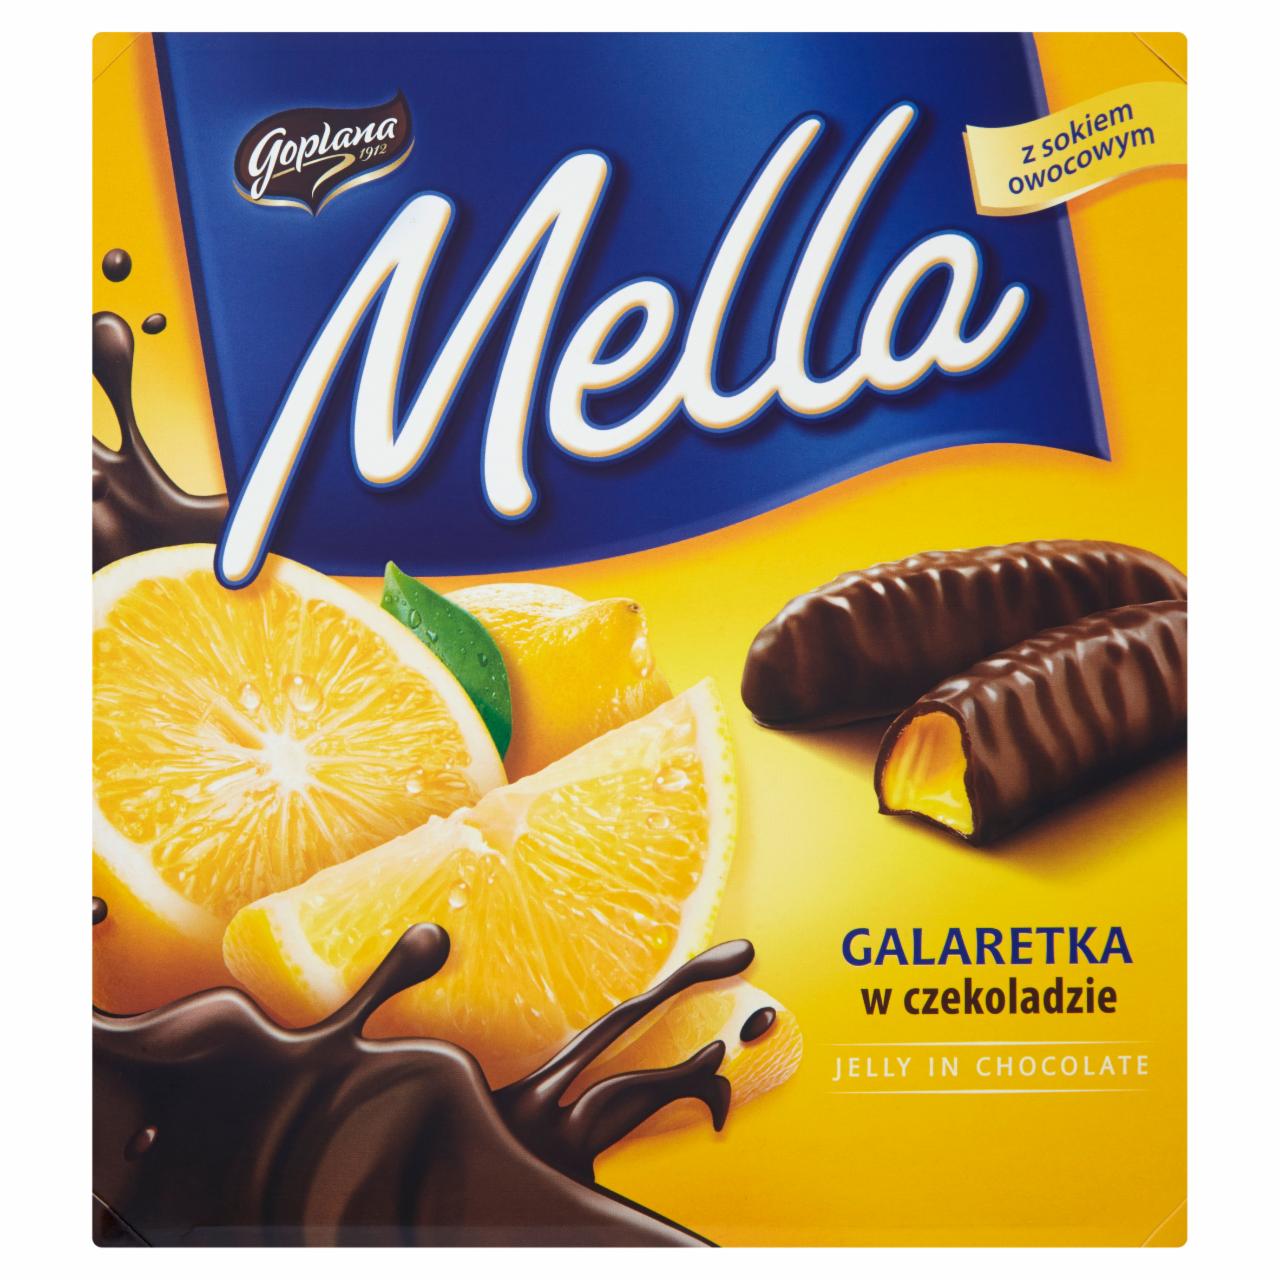 Zdjęcia - Goplana Mella Galaretka w czekoladzie o smaku cytrynowym 190 g